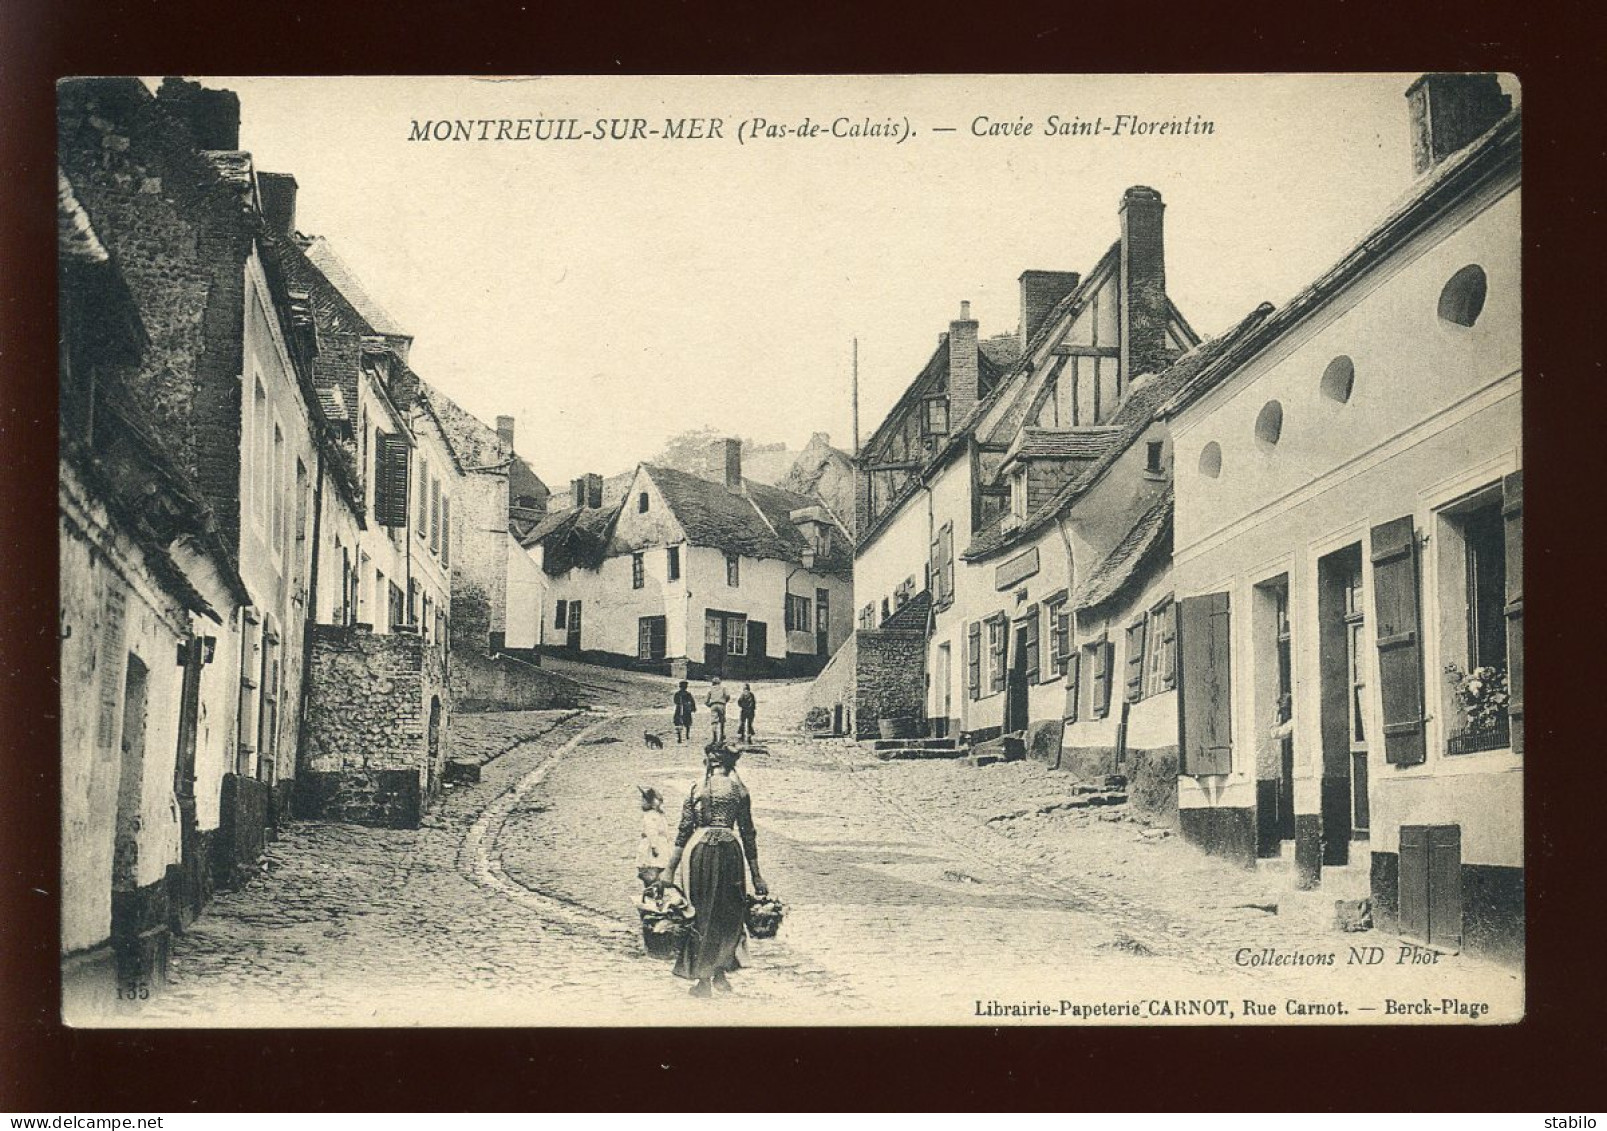 62 - MONTREUIL-SUR-MER - CAVEE ST-FLORENTIN - Montreuil